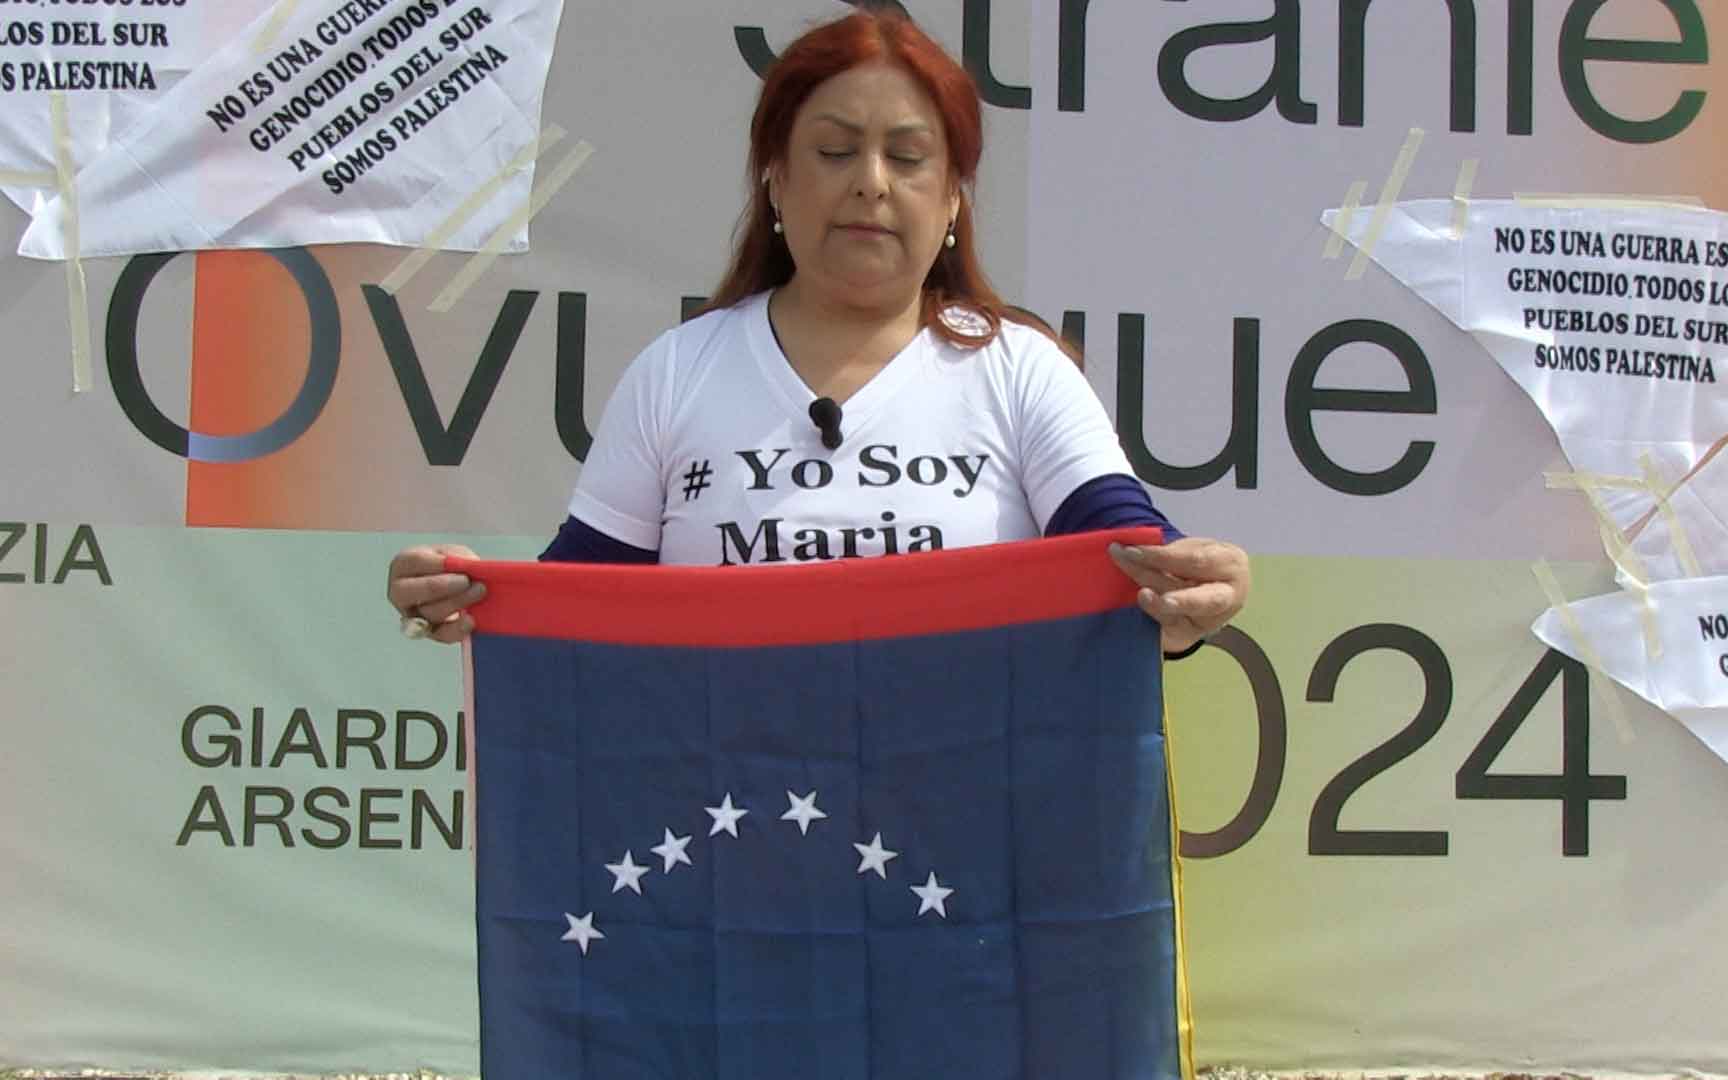 Andreina Fuentes Angarita, presidente de la Arts Connection Foundation, liderando la protesta frente al Pabellón de Venezuela en la Bienal de Arte de Venecia.